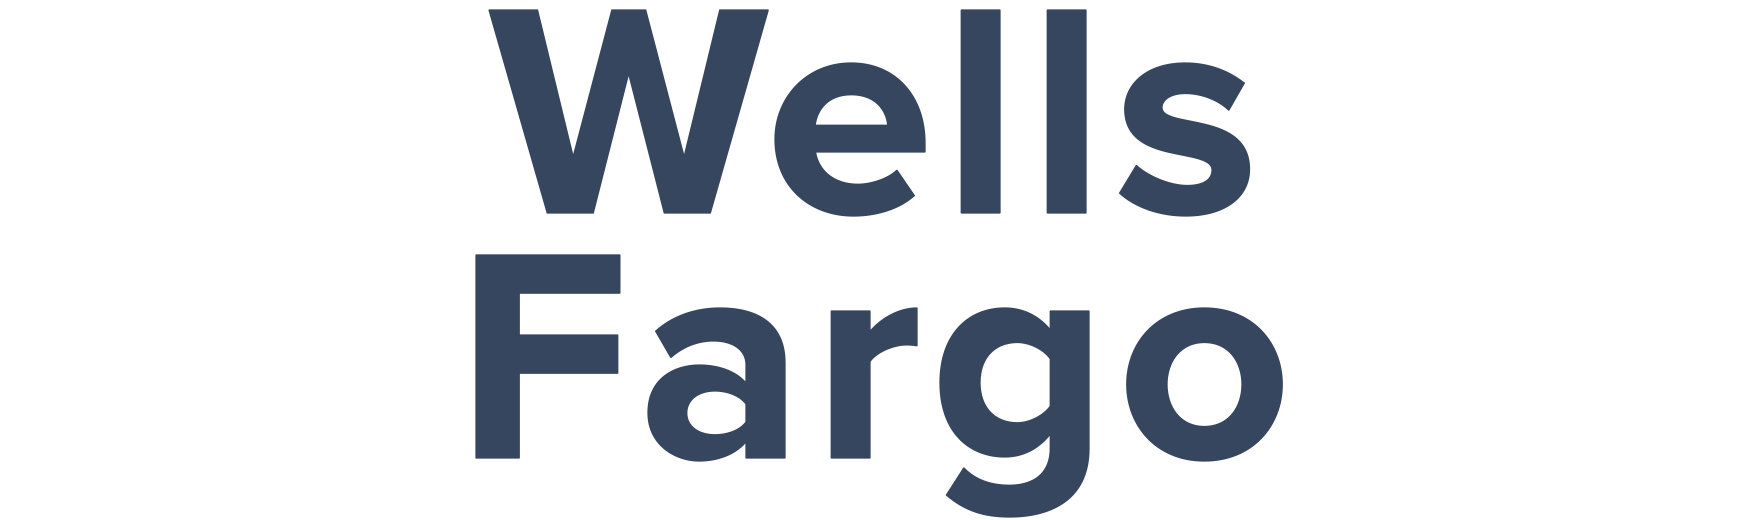 Wells Fargo credit cards